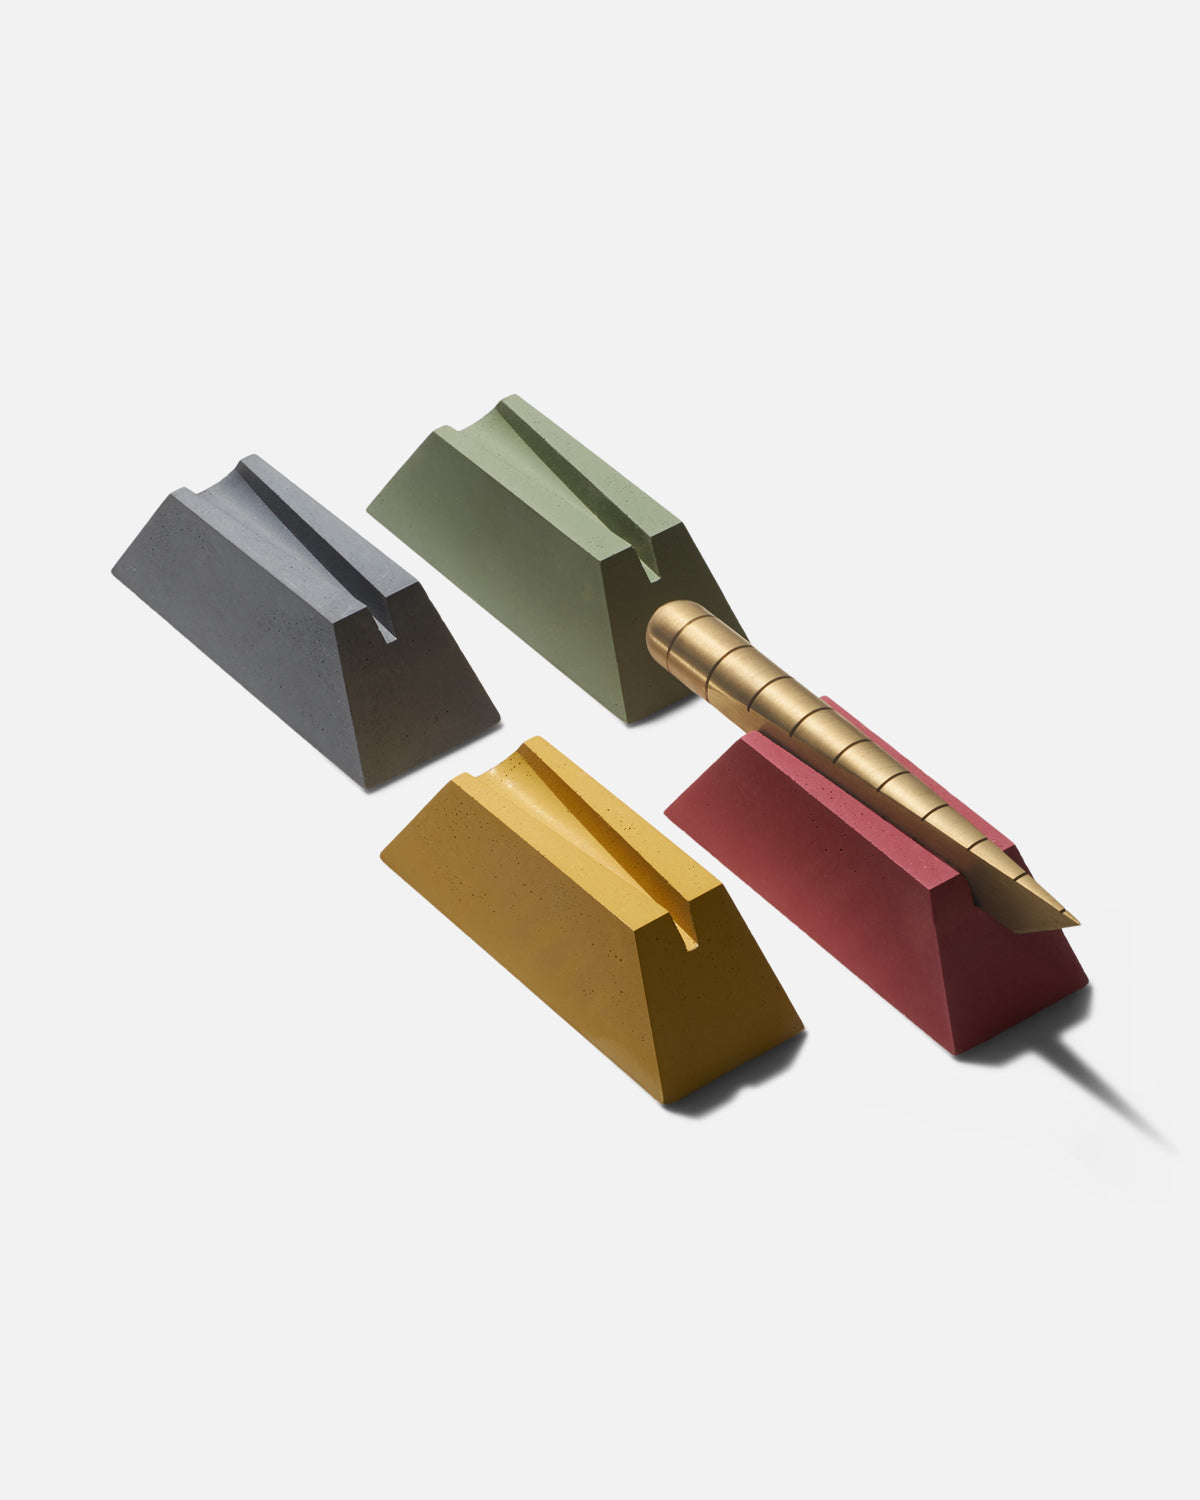 Craighill – Sockel für Schreibtischmesser